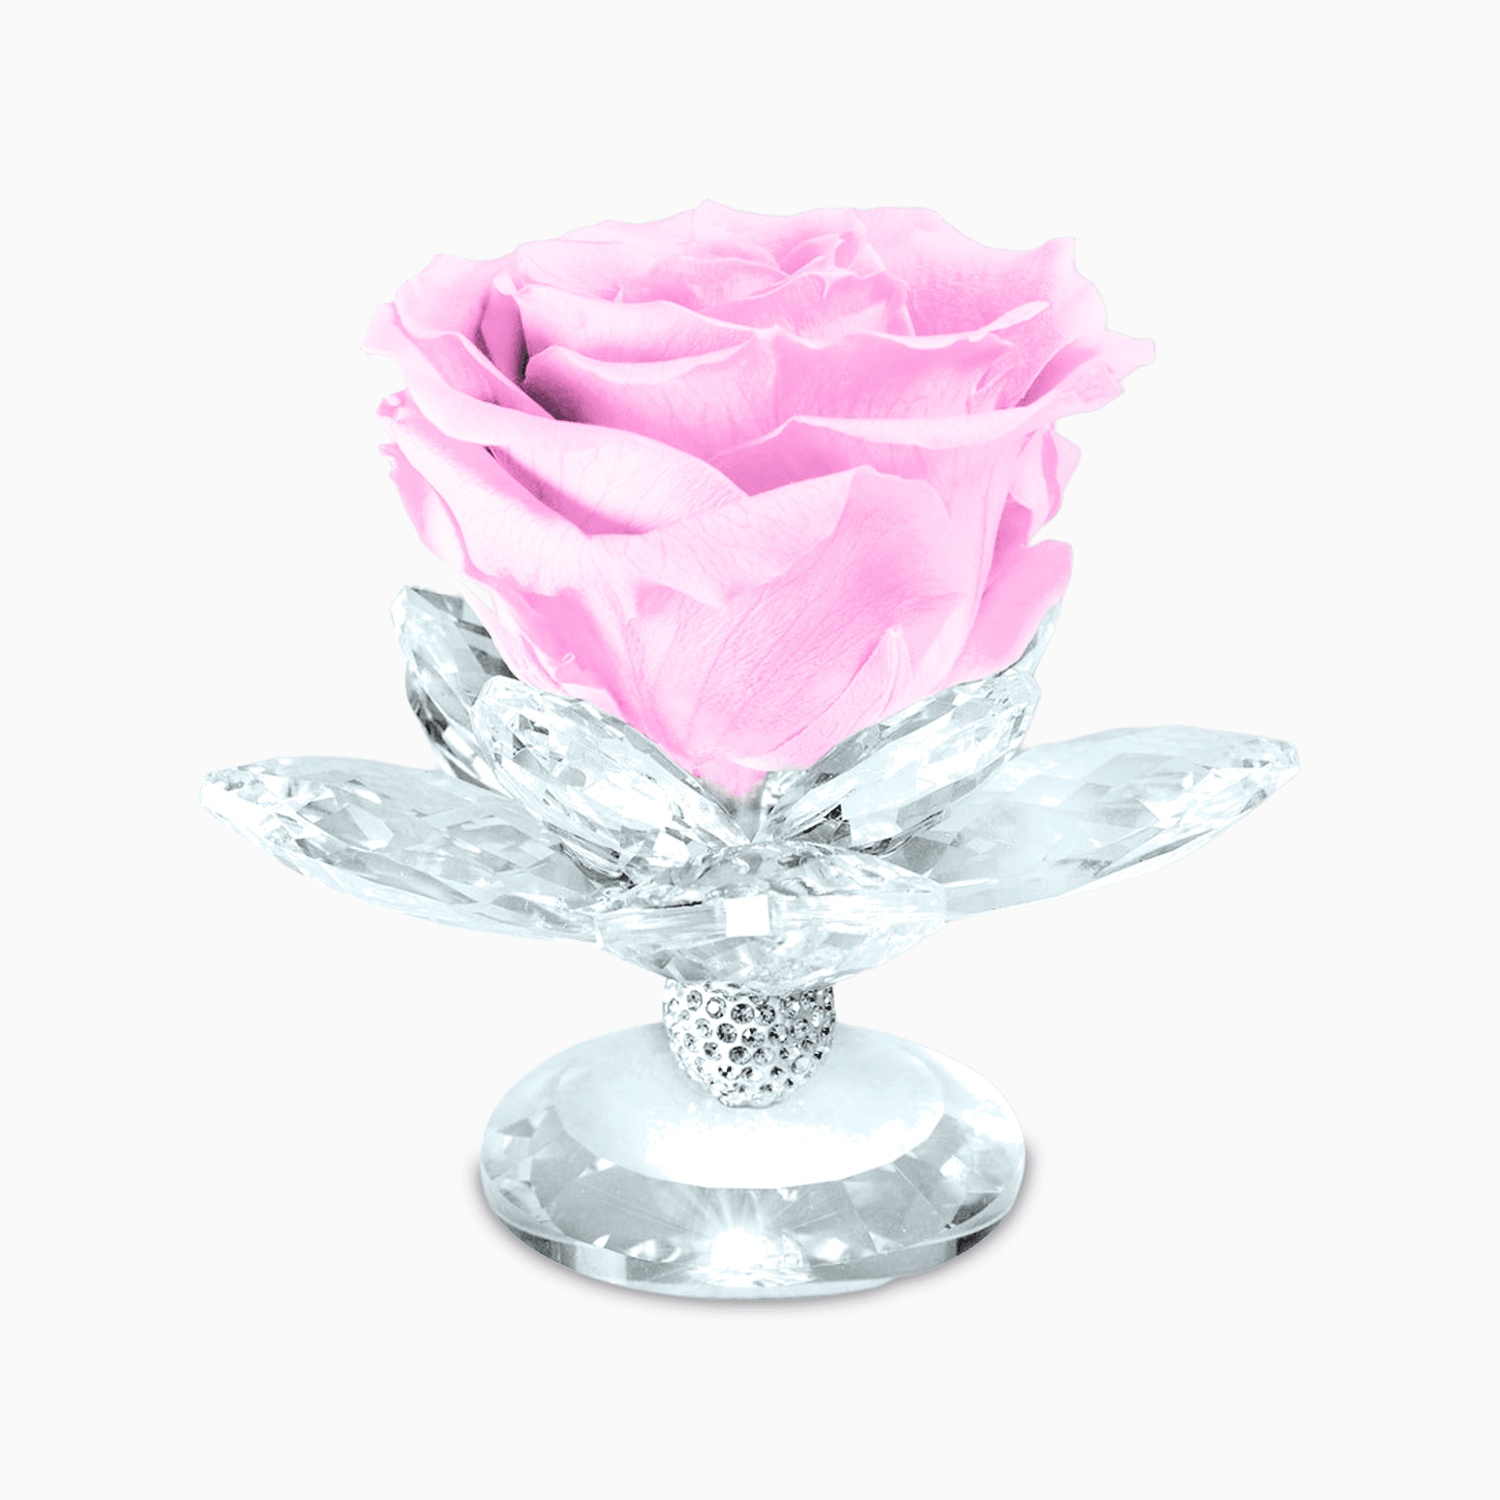 Bomboniera Rosa Stabilizzata su Alzatina Ninfea in Cristal per Comunione, Matrimonio, Anniversario Rosa Stabilizzata Albalu Bomboniere Rosa Standard 